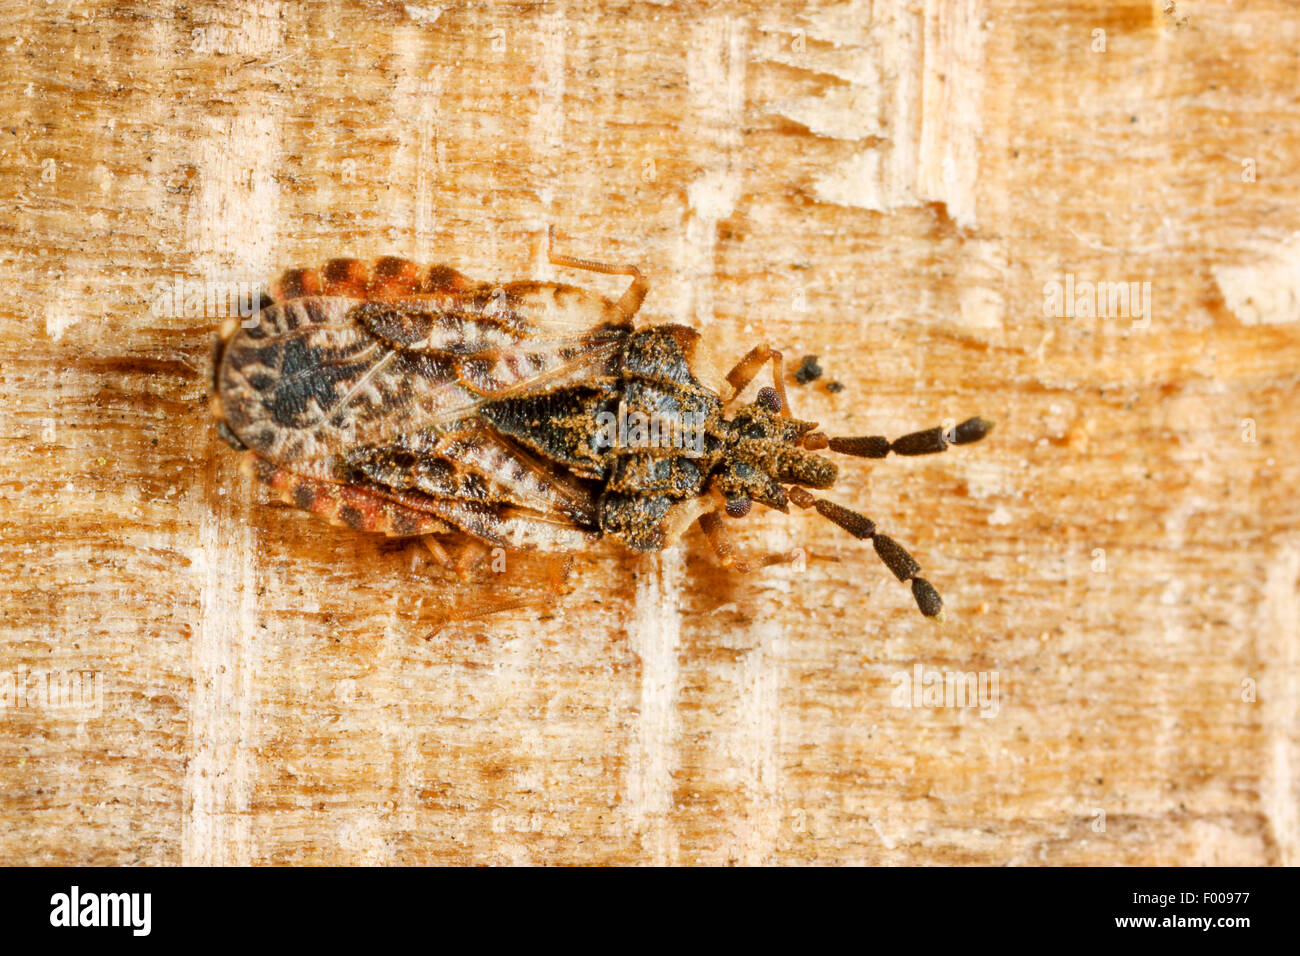 Flatbug (Aradus depressus), sitting on bark, Germany Stock Photo